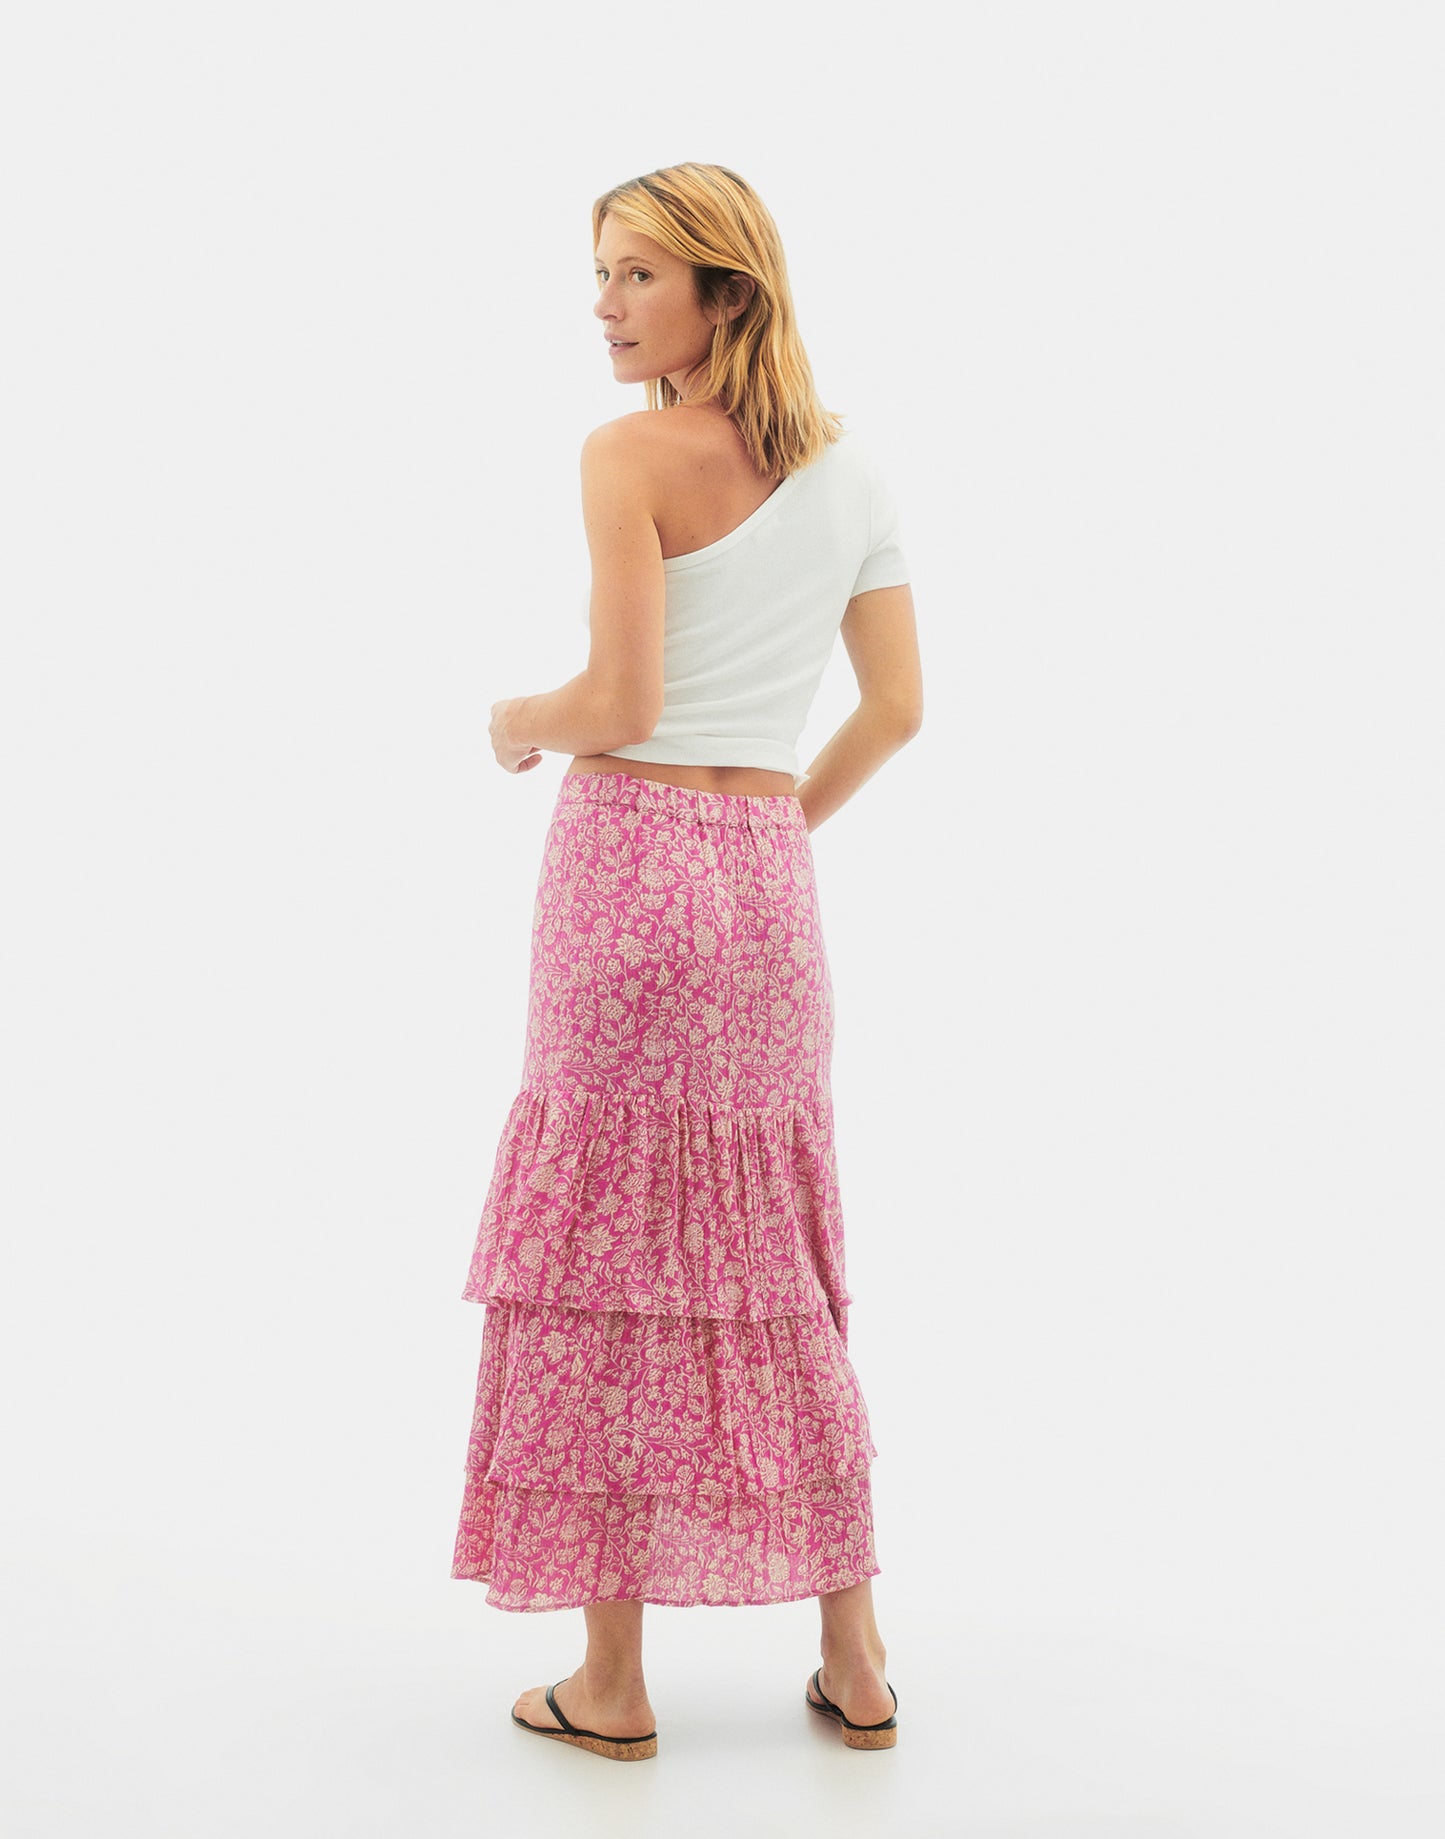 Rose skirt